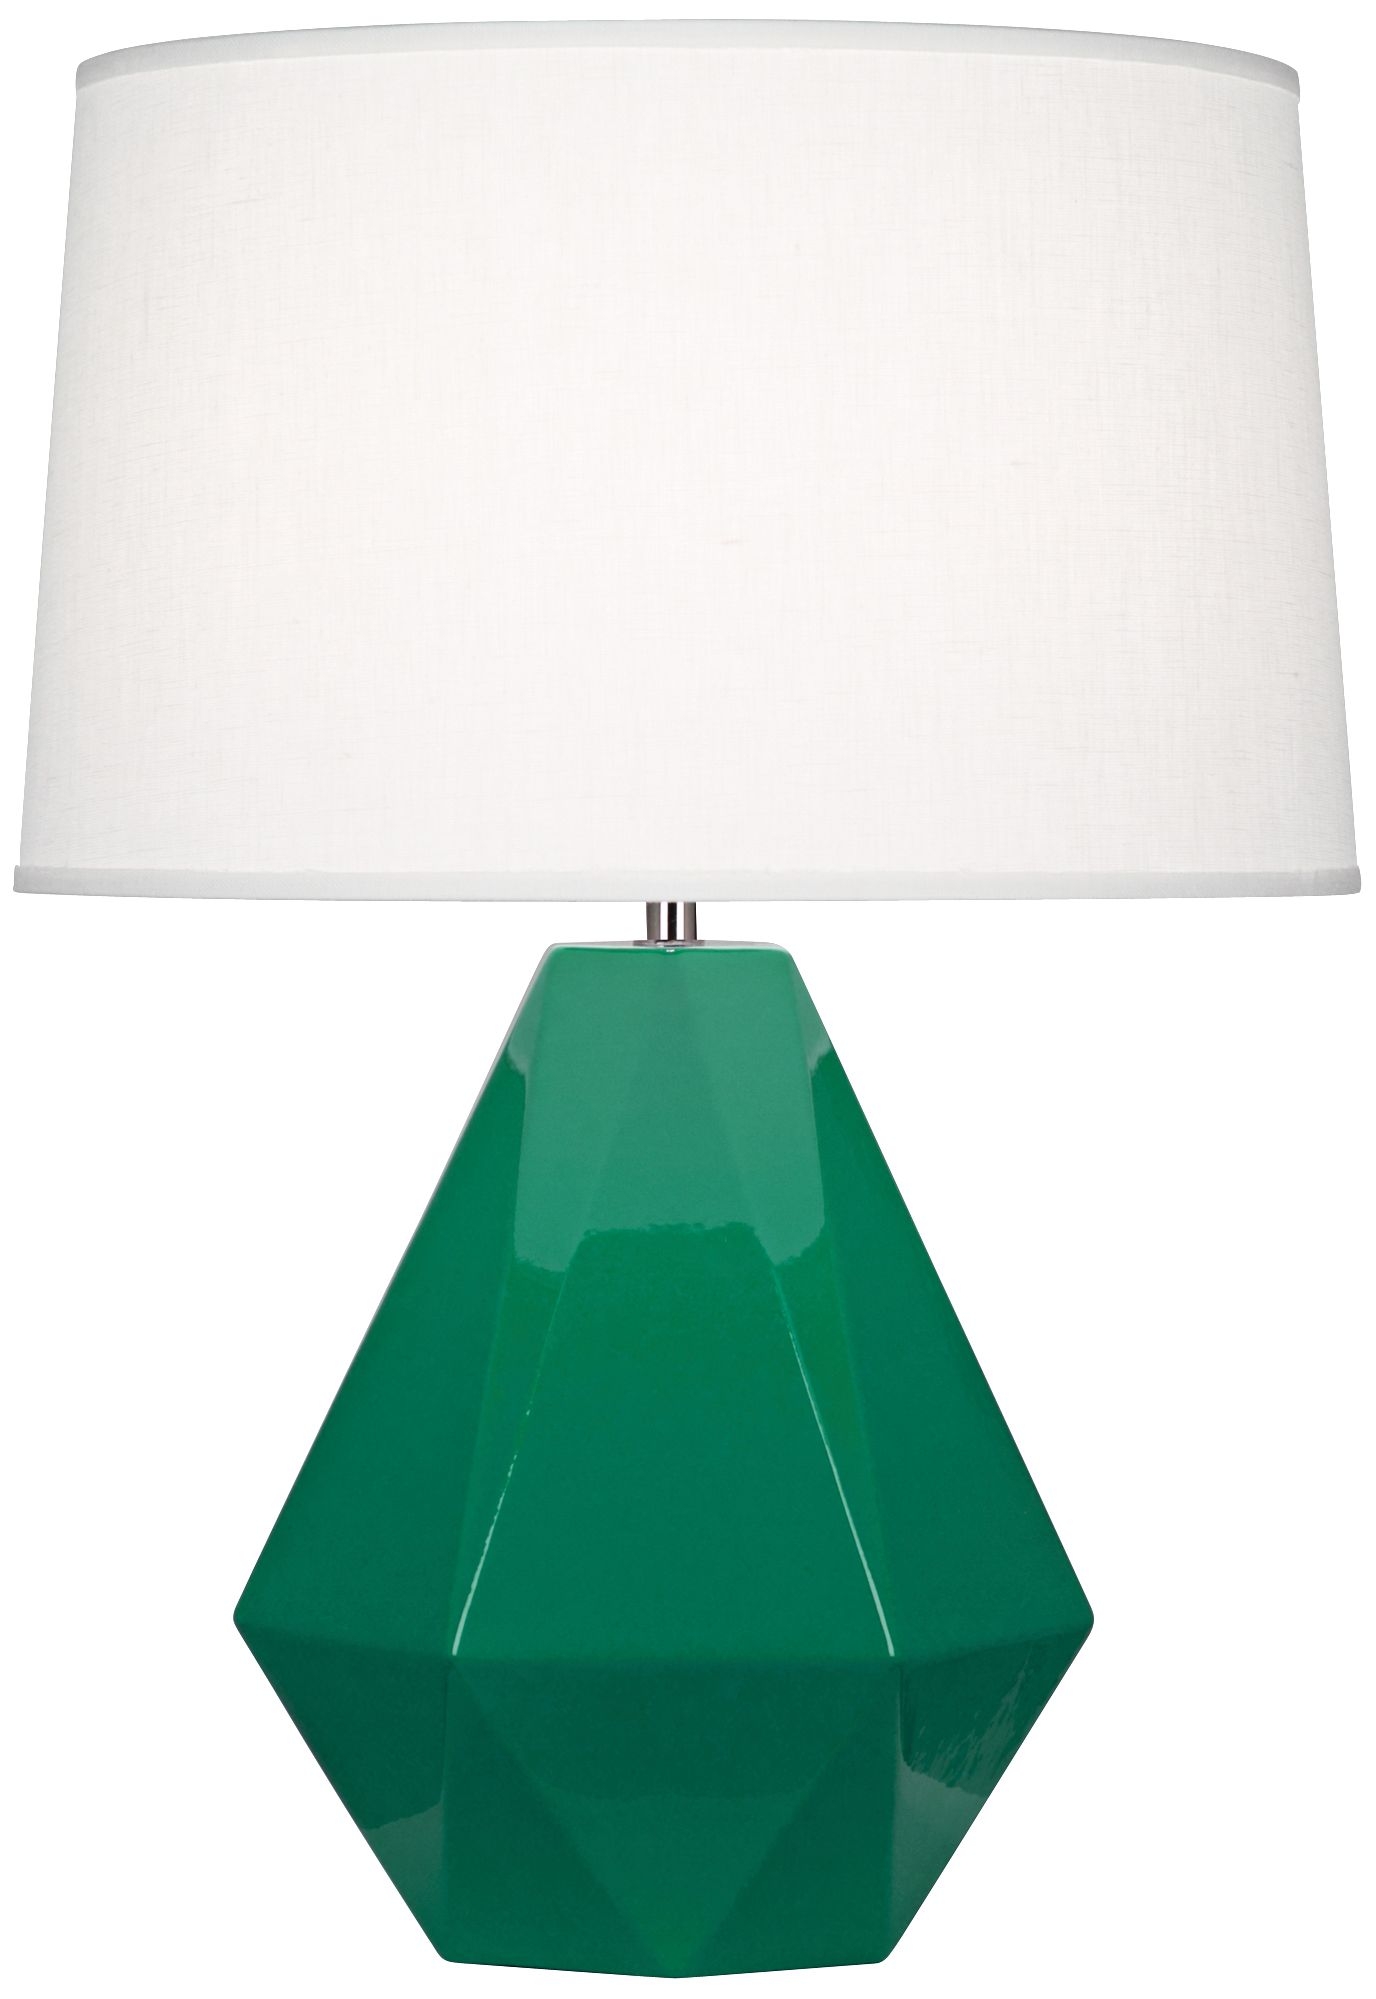 Emerald Glazed Table Lamp - Image 0